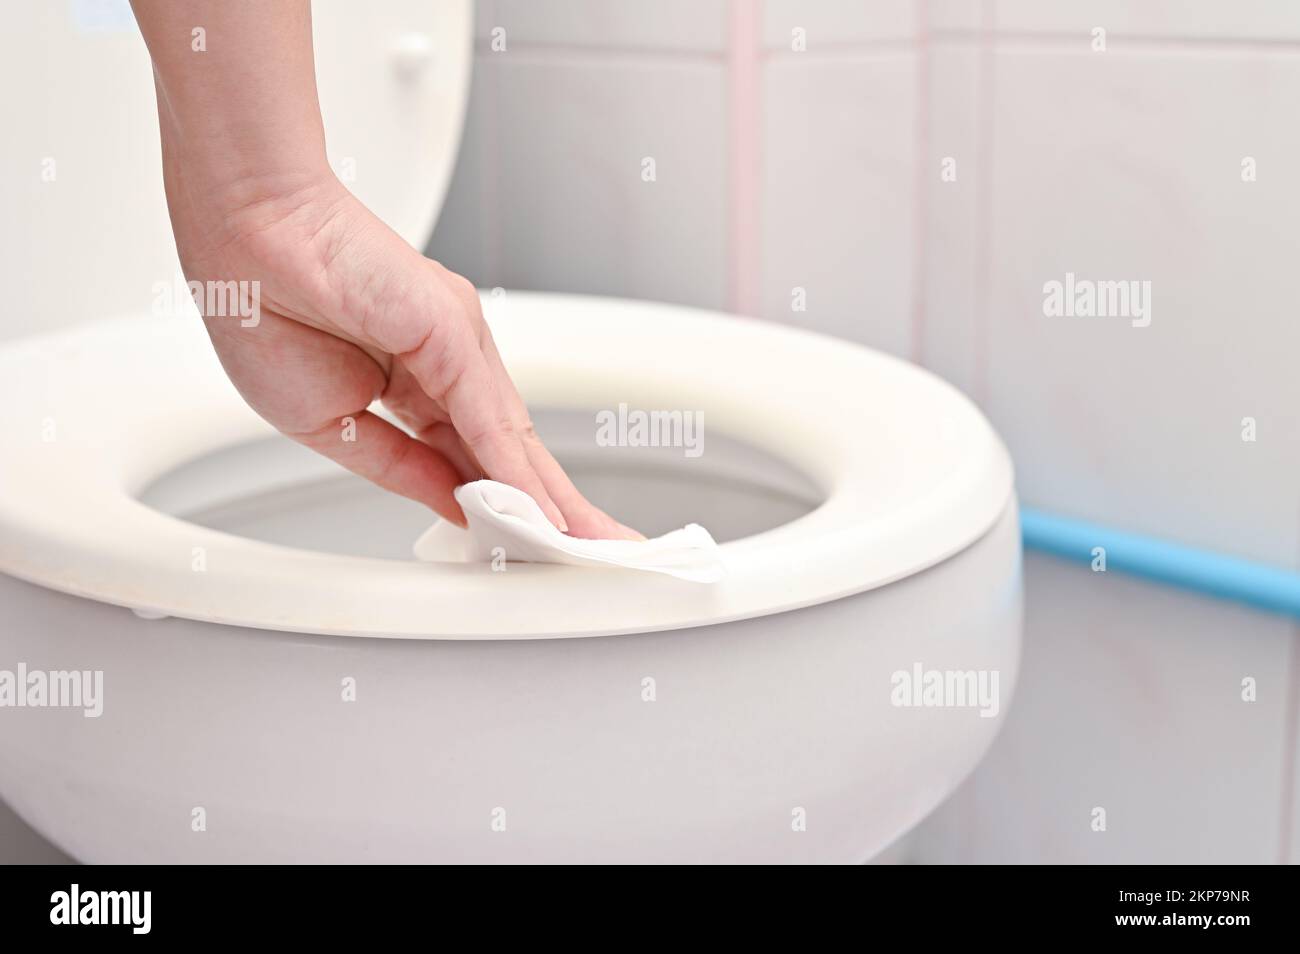 Eine Nahaufnahme der Hand einer Frau, die den Toilettensitz mit einem feuchten Tuch reinigt Stockfoto